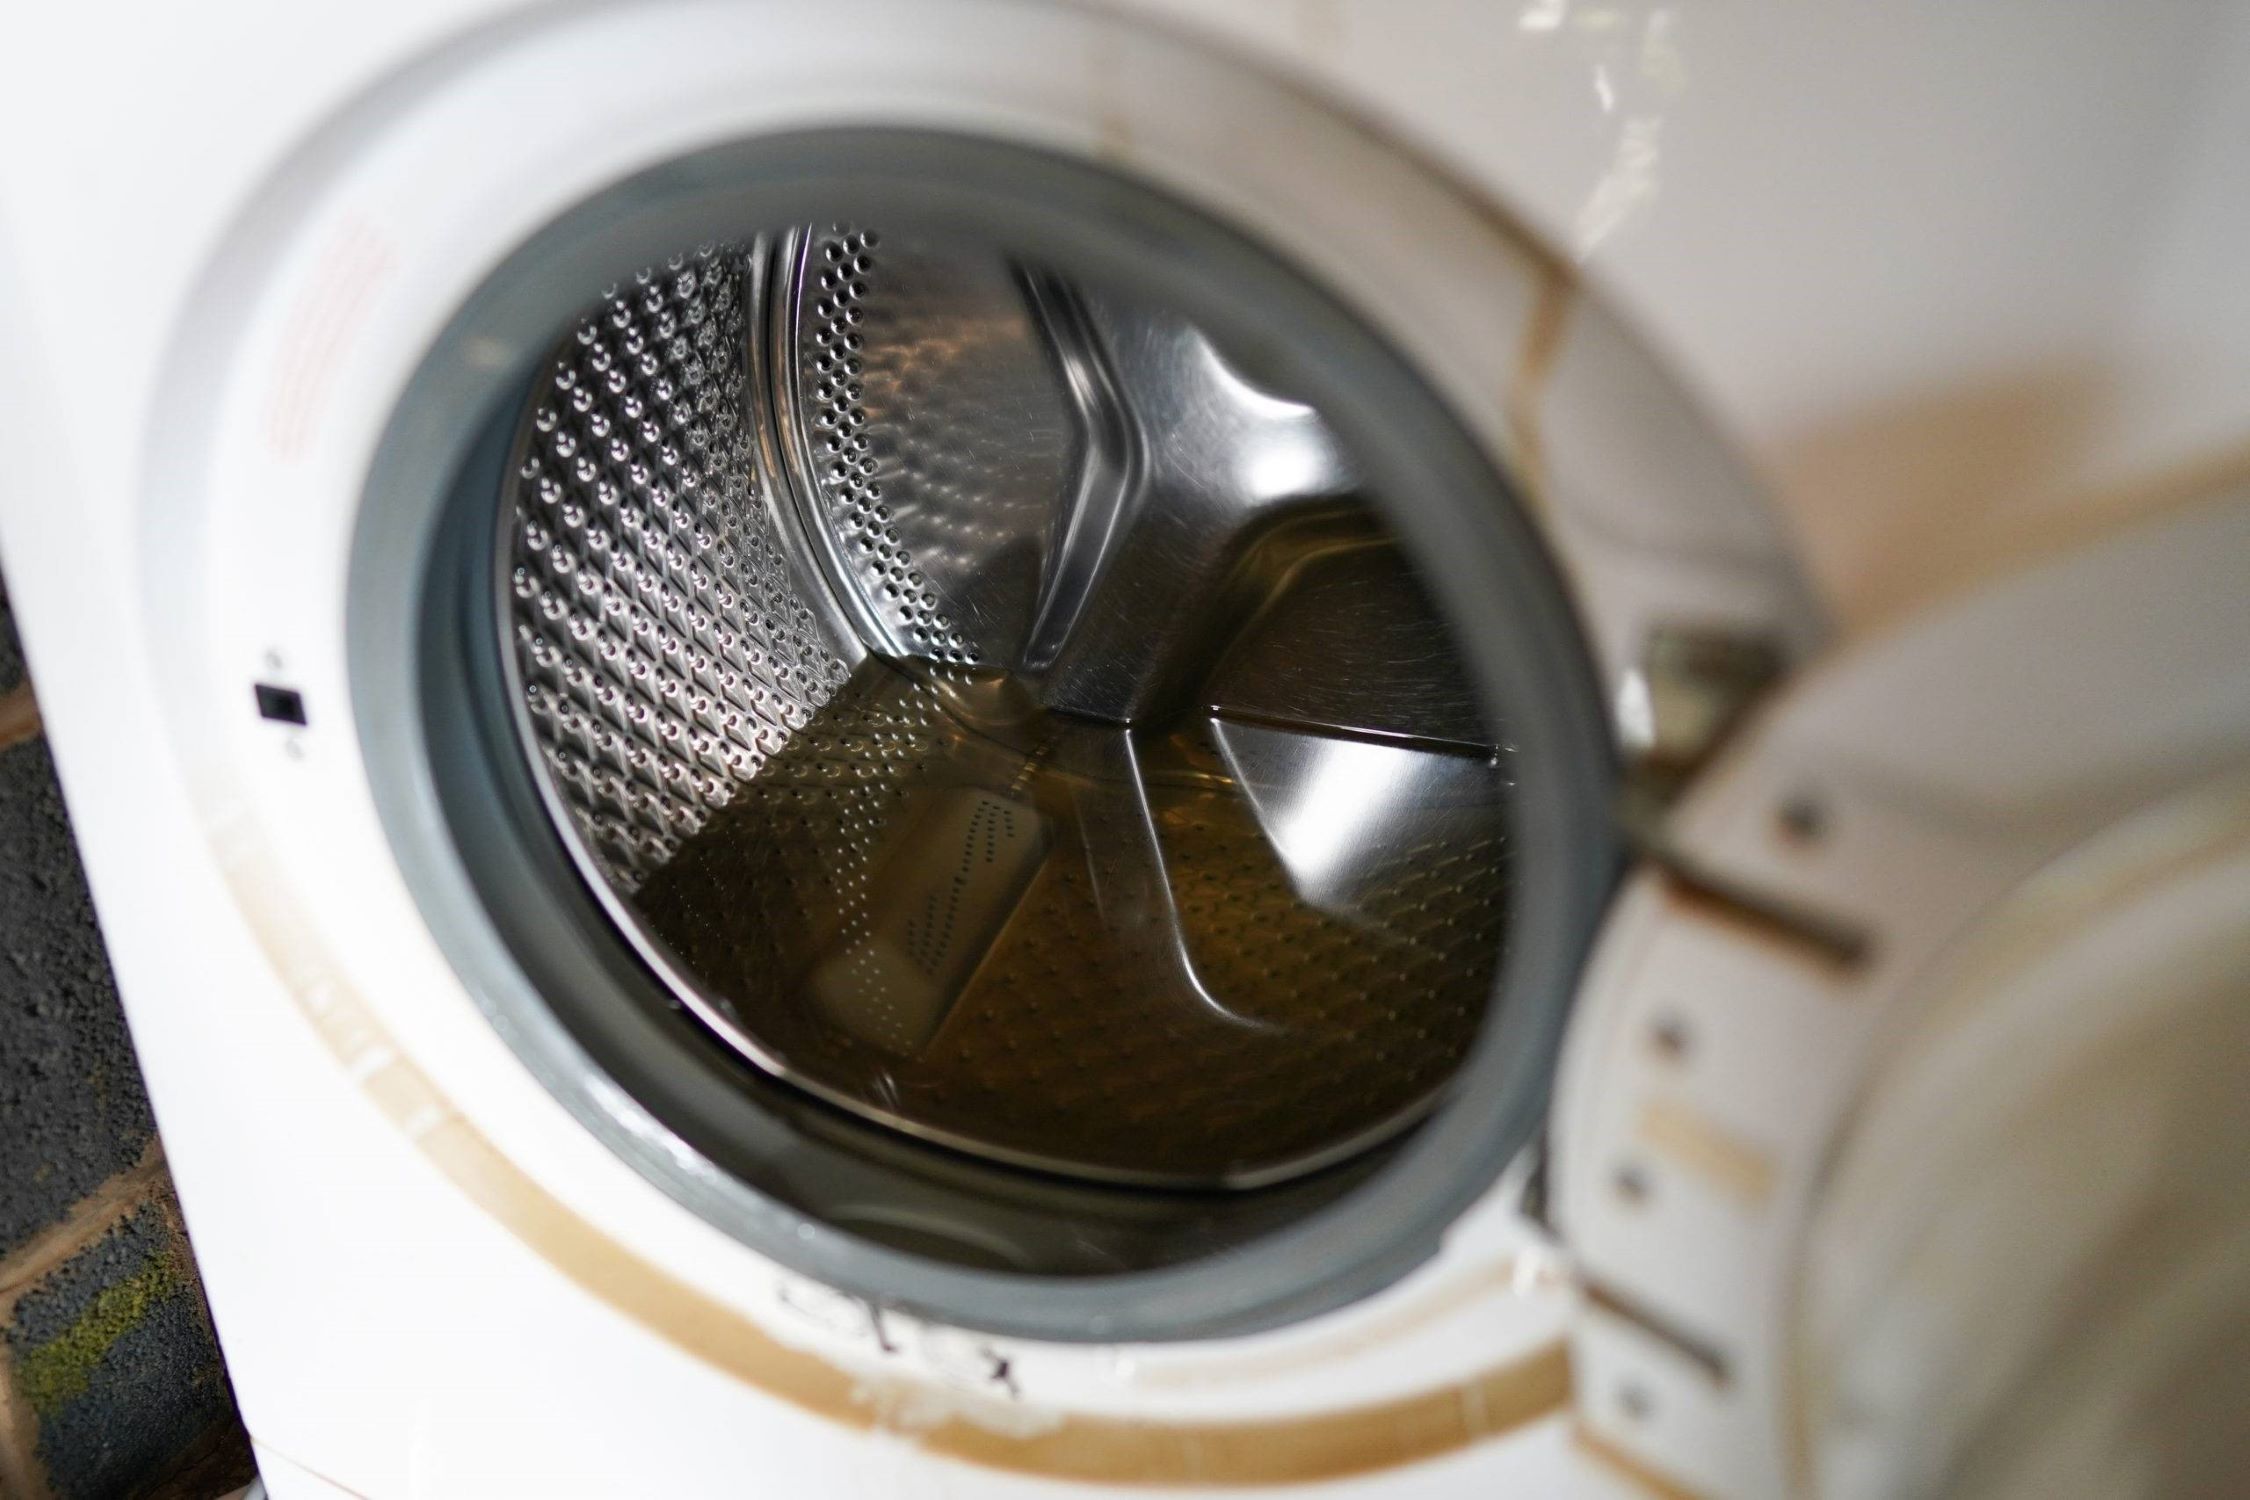 Samsung Washing Machine: How To Drain Water